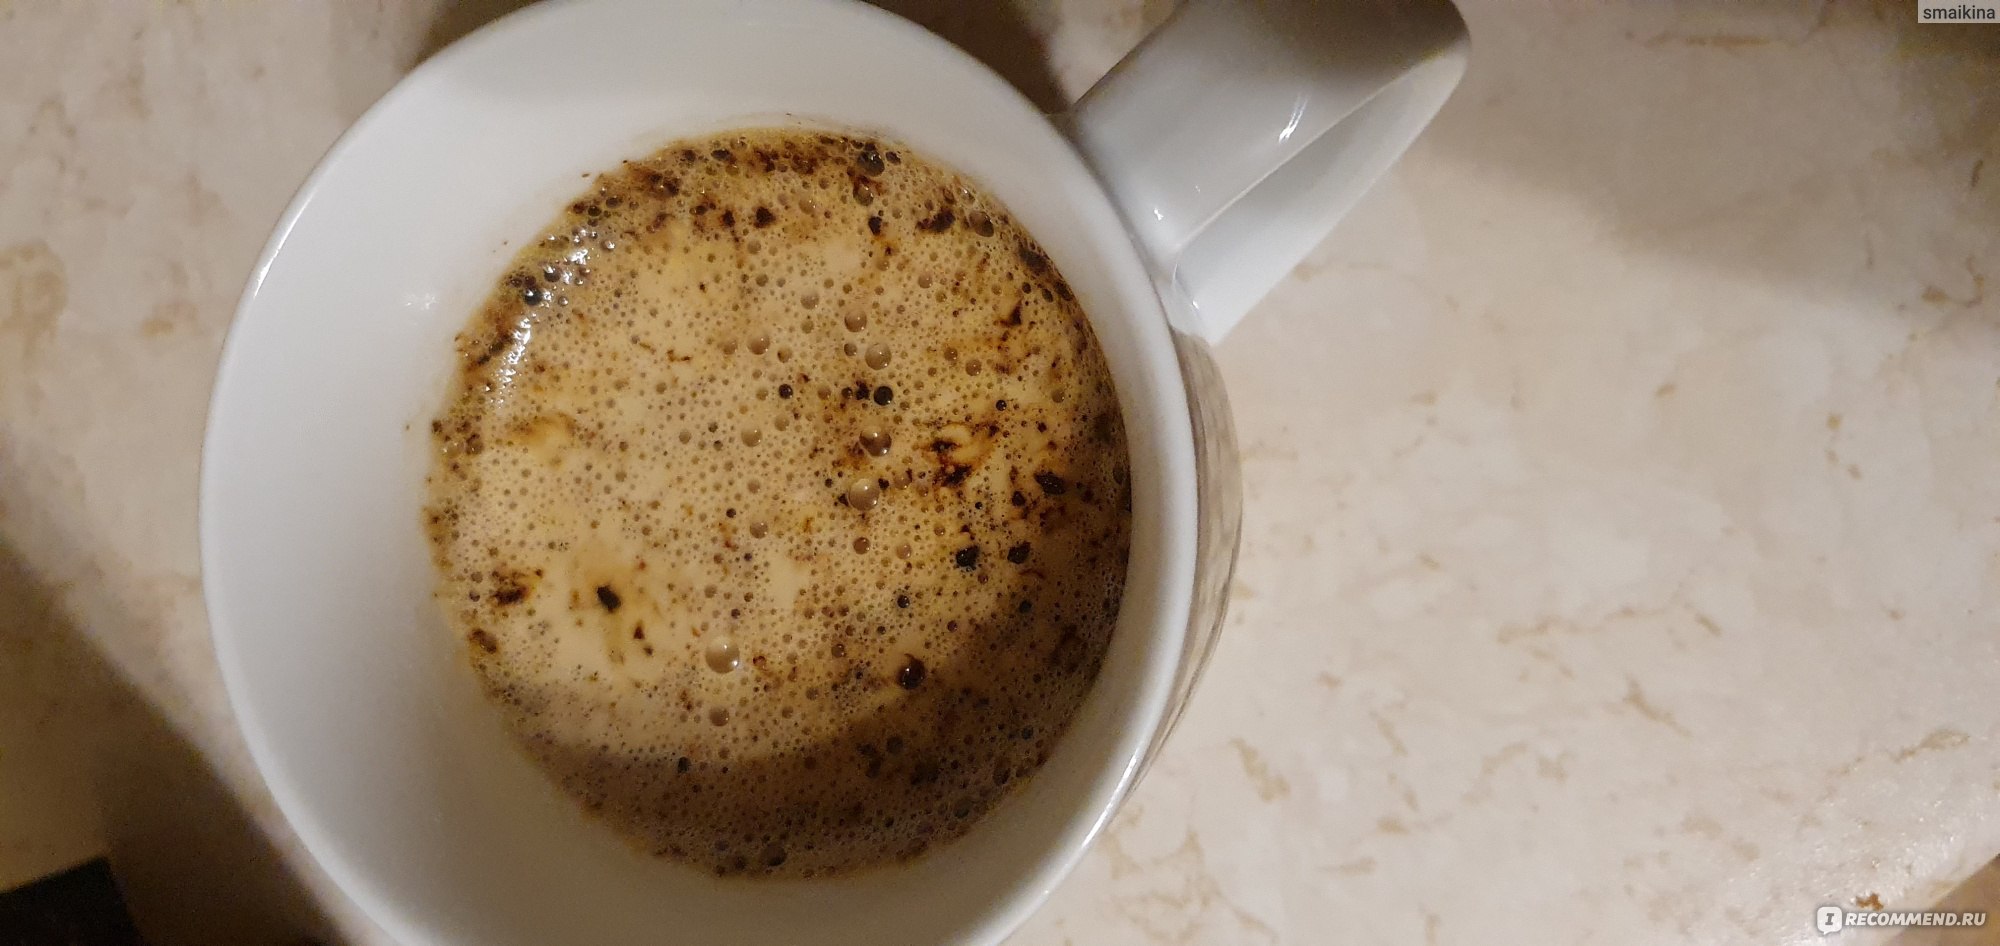 Кофе натуральный растворимый сублимированный Cafe Primero Gold фото